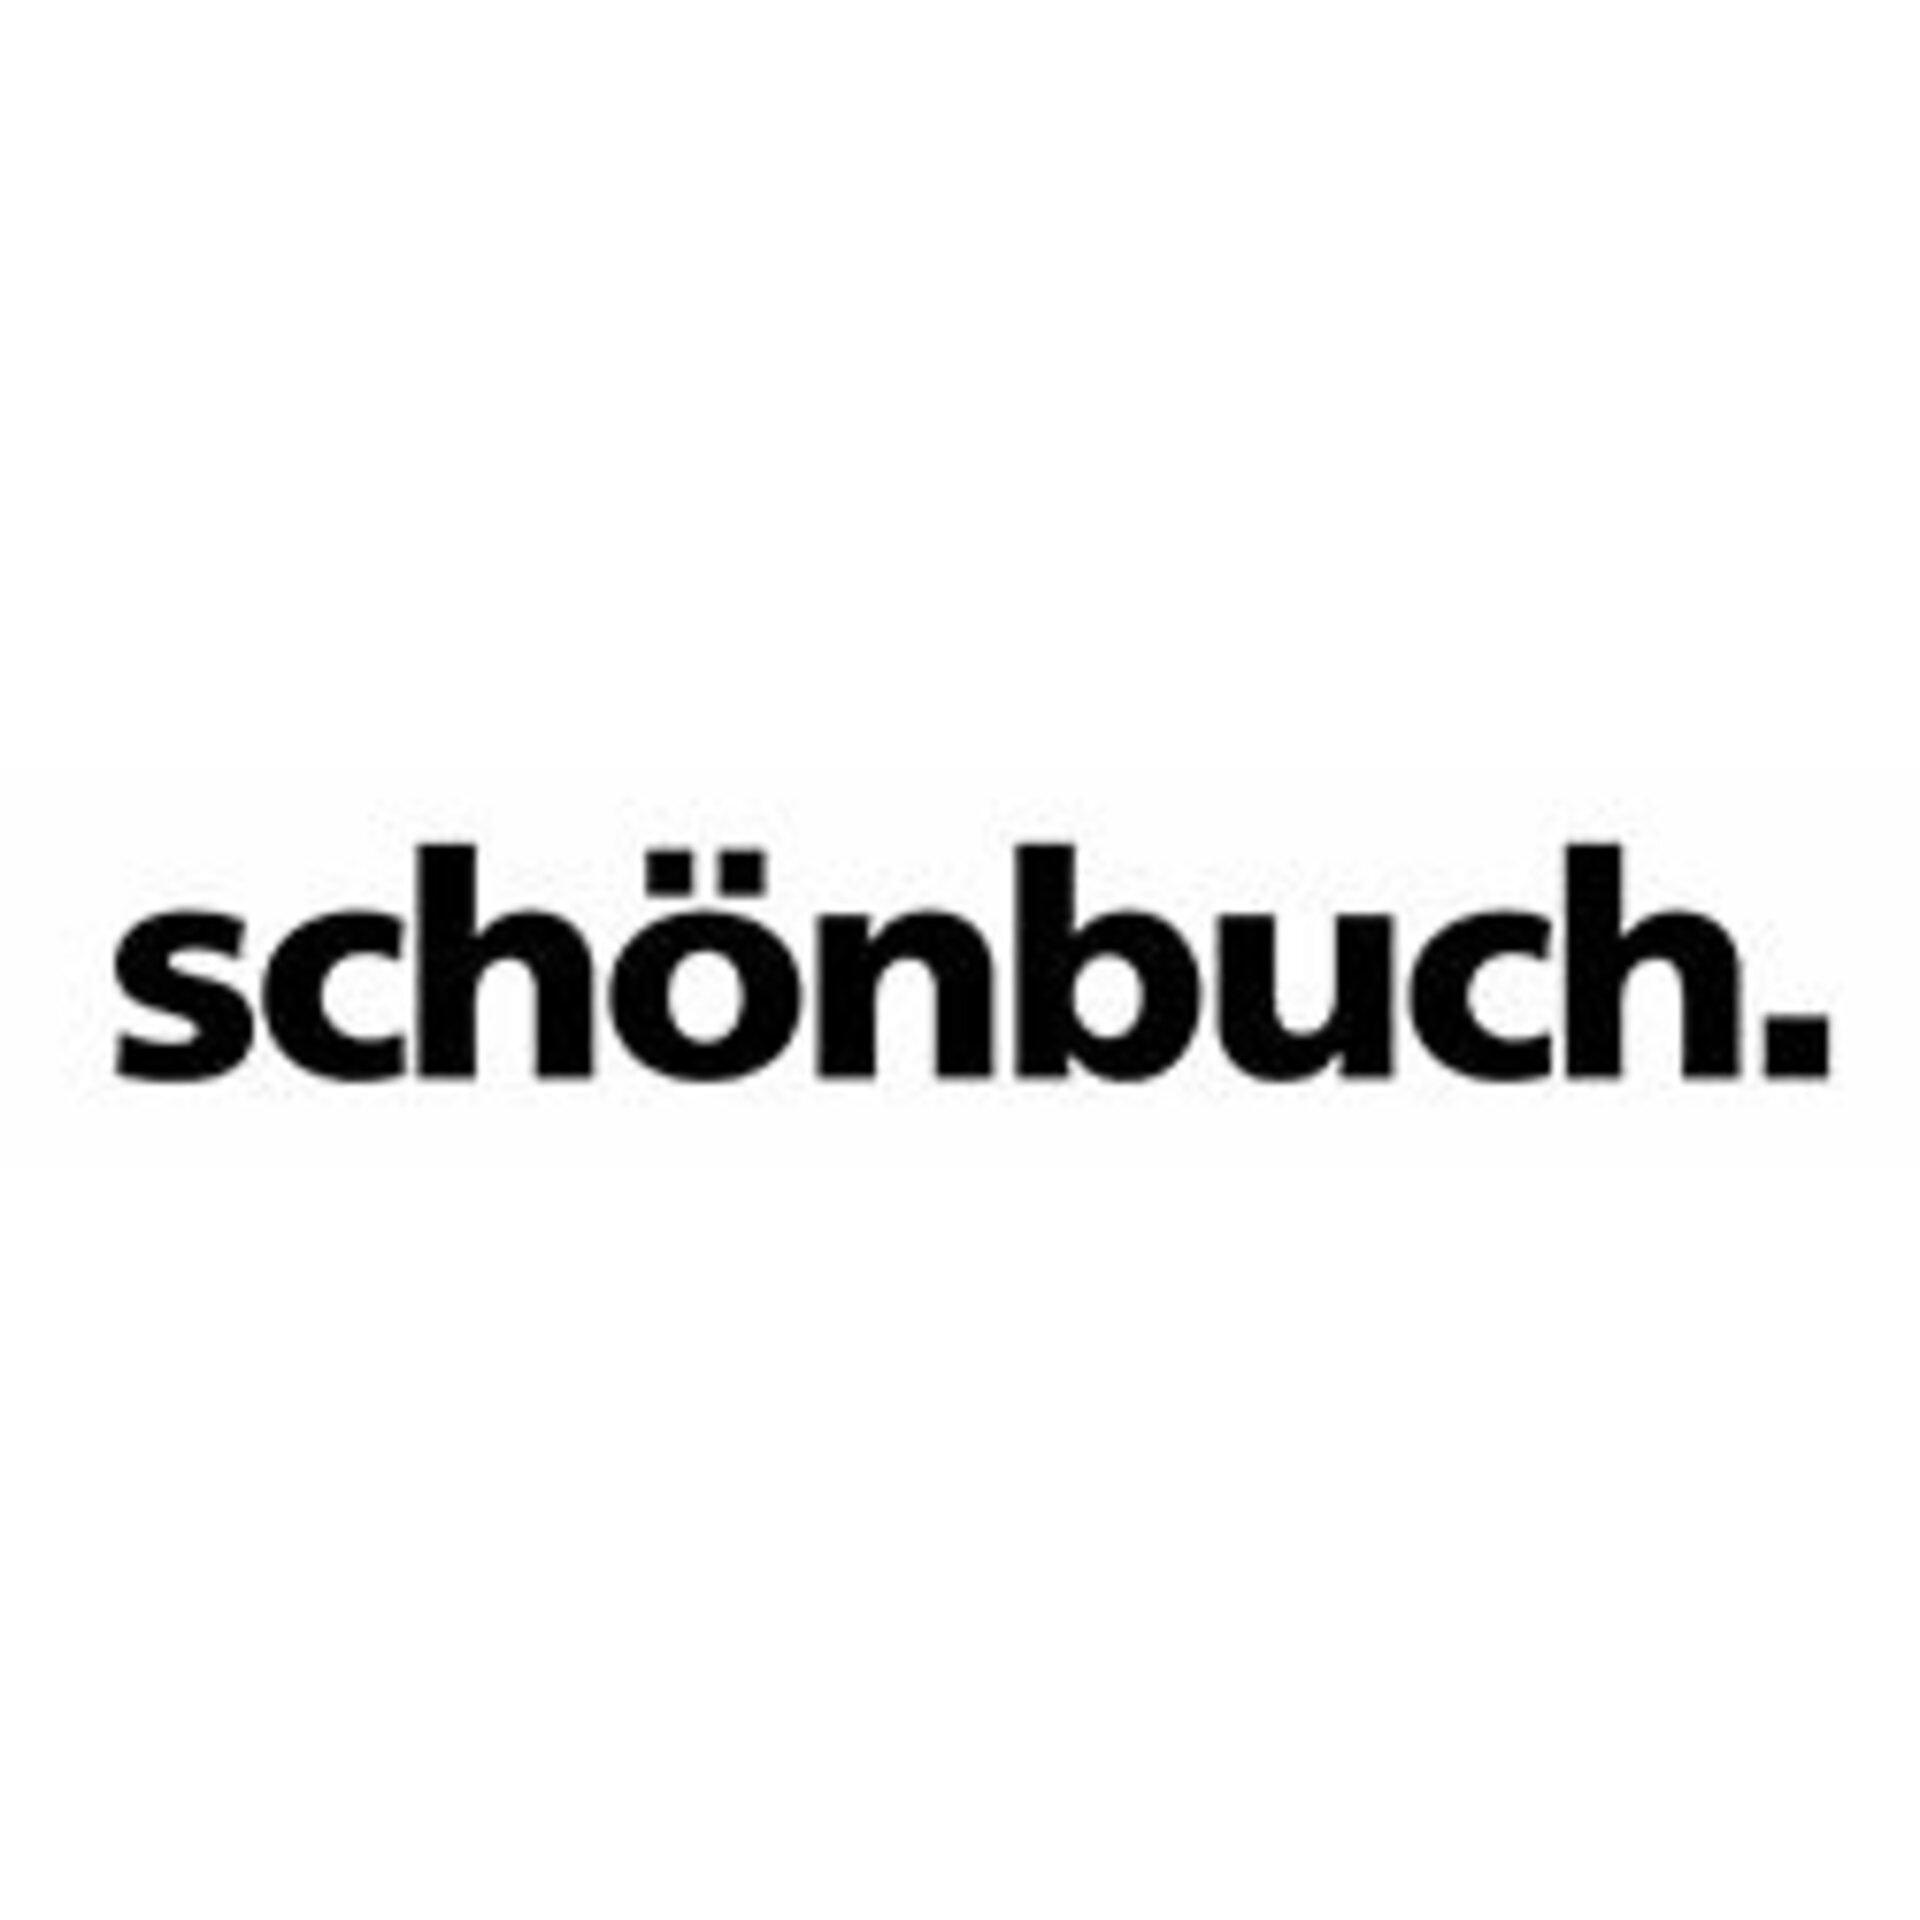 Logo schönbuch.